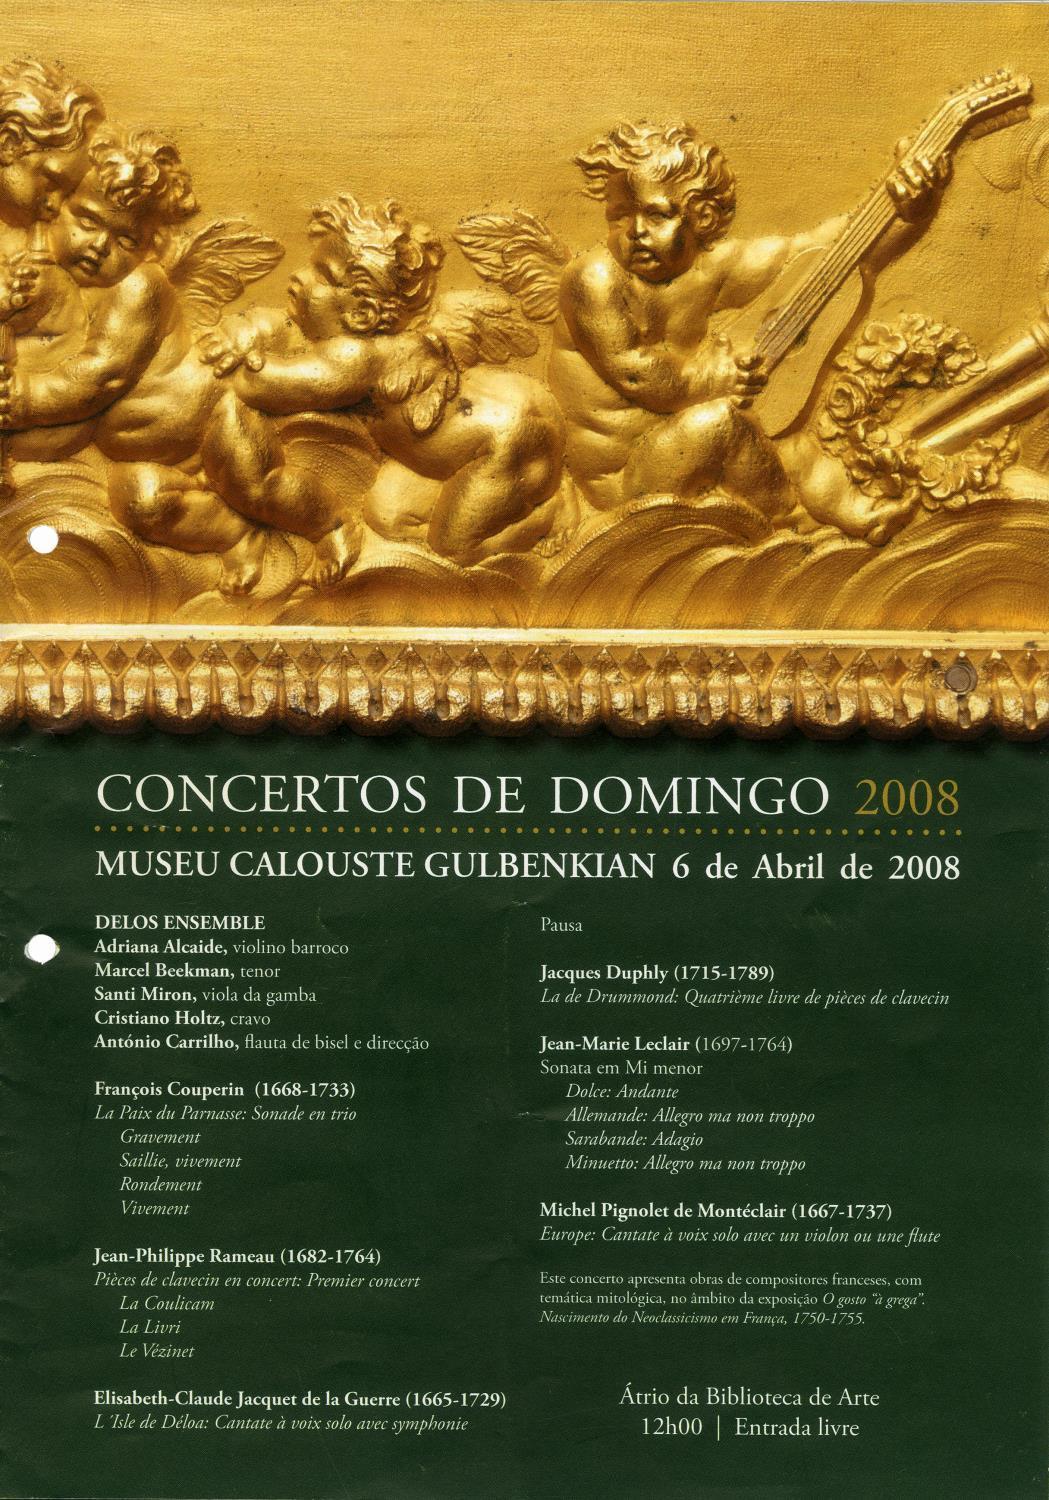 Concertos de Domingo 2008